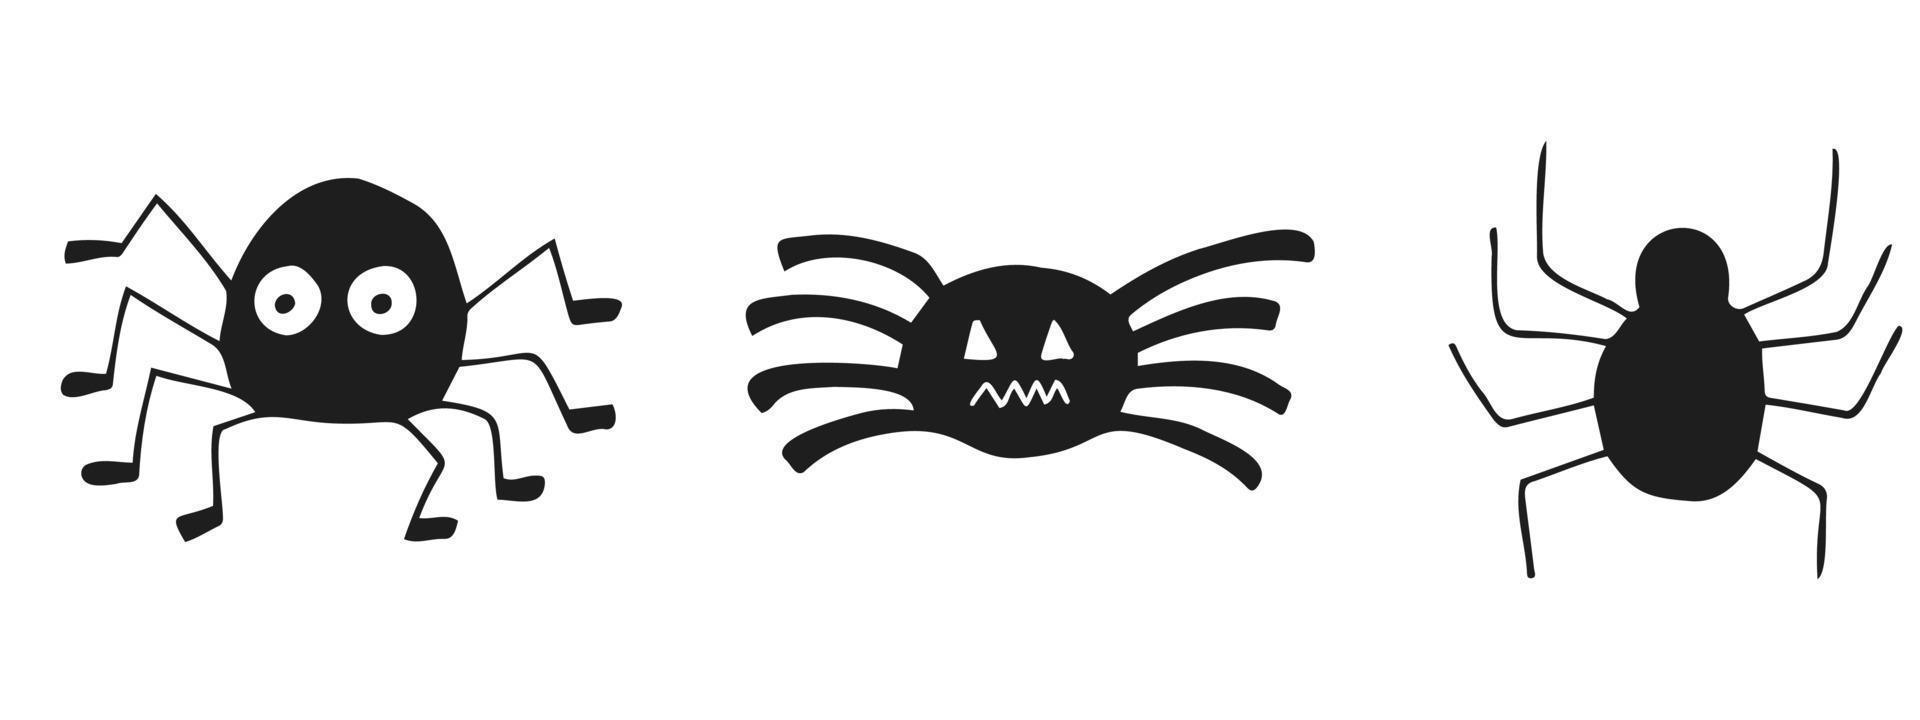 halloween 2022 - 31 octobre. une fête traditionnelle. La charité s'il-vous-plaît. illustration vectorielle dans un style doodle dessiné à la main. ensemble de silhouettes d'araignées mignonnes. vecteur